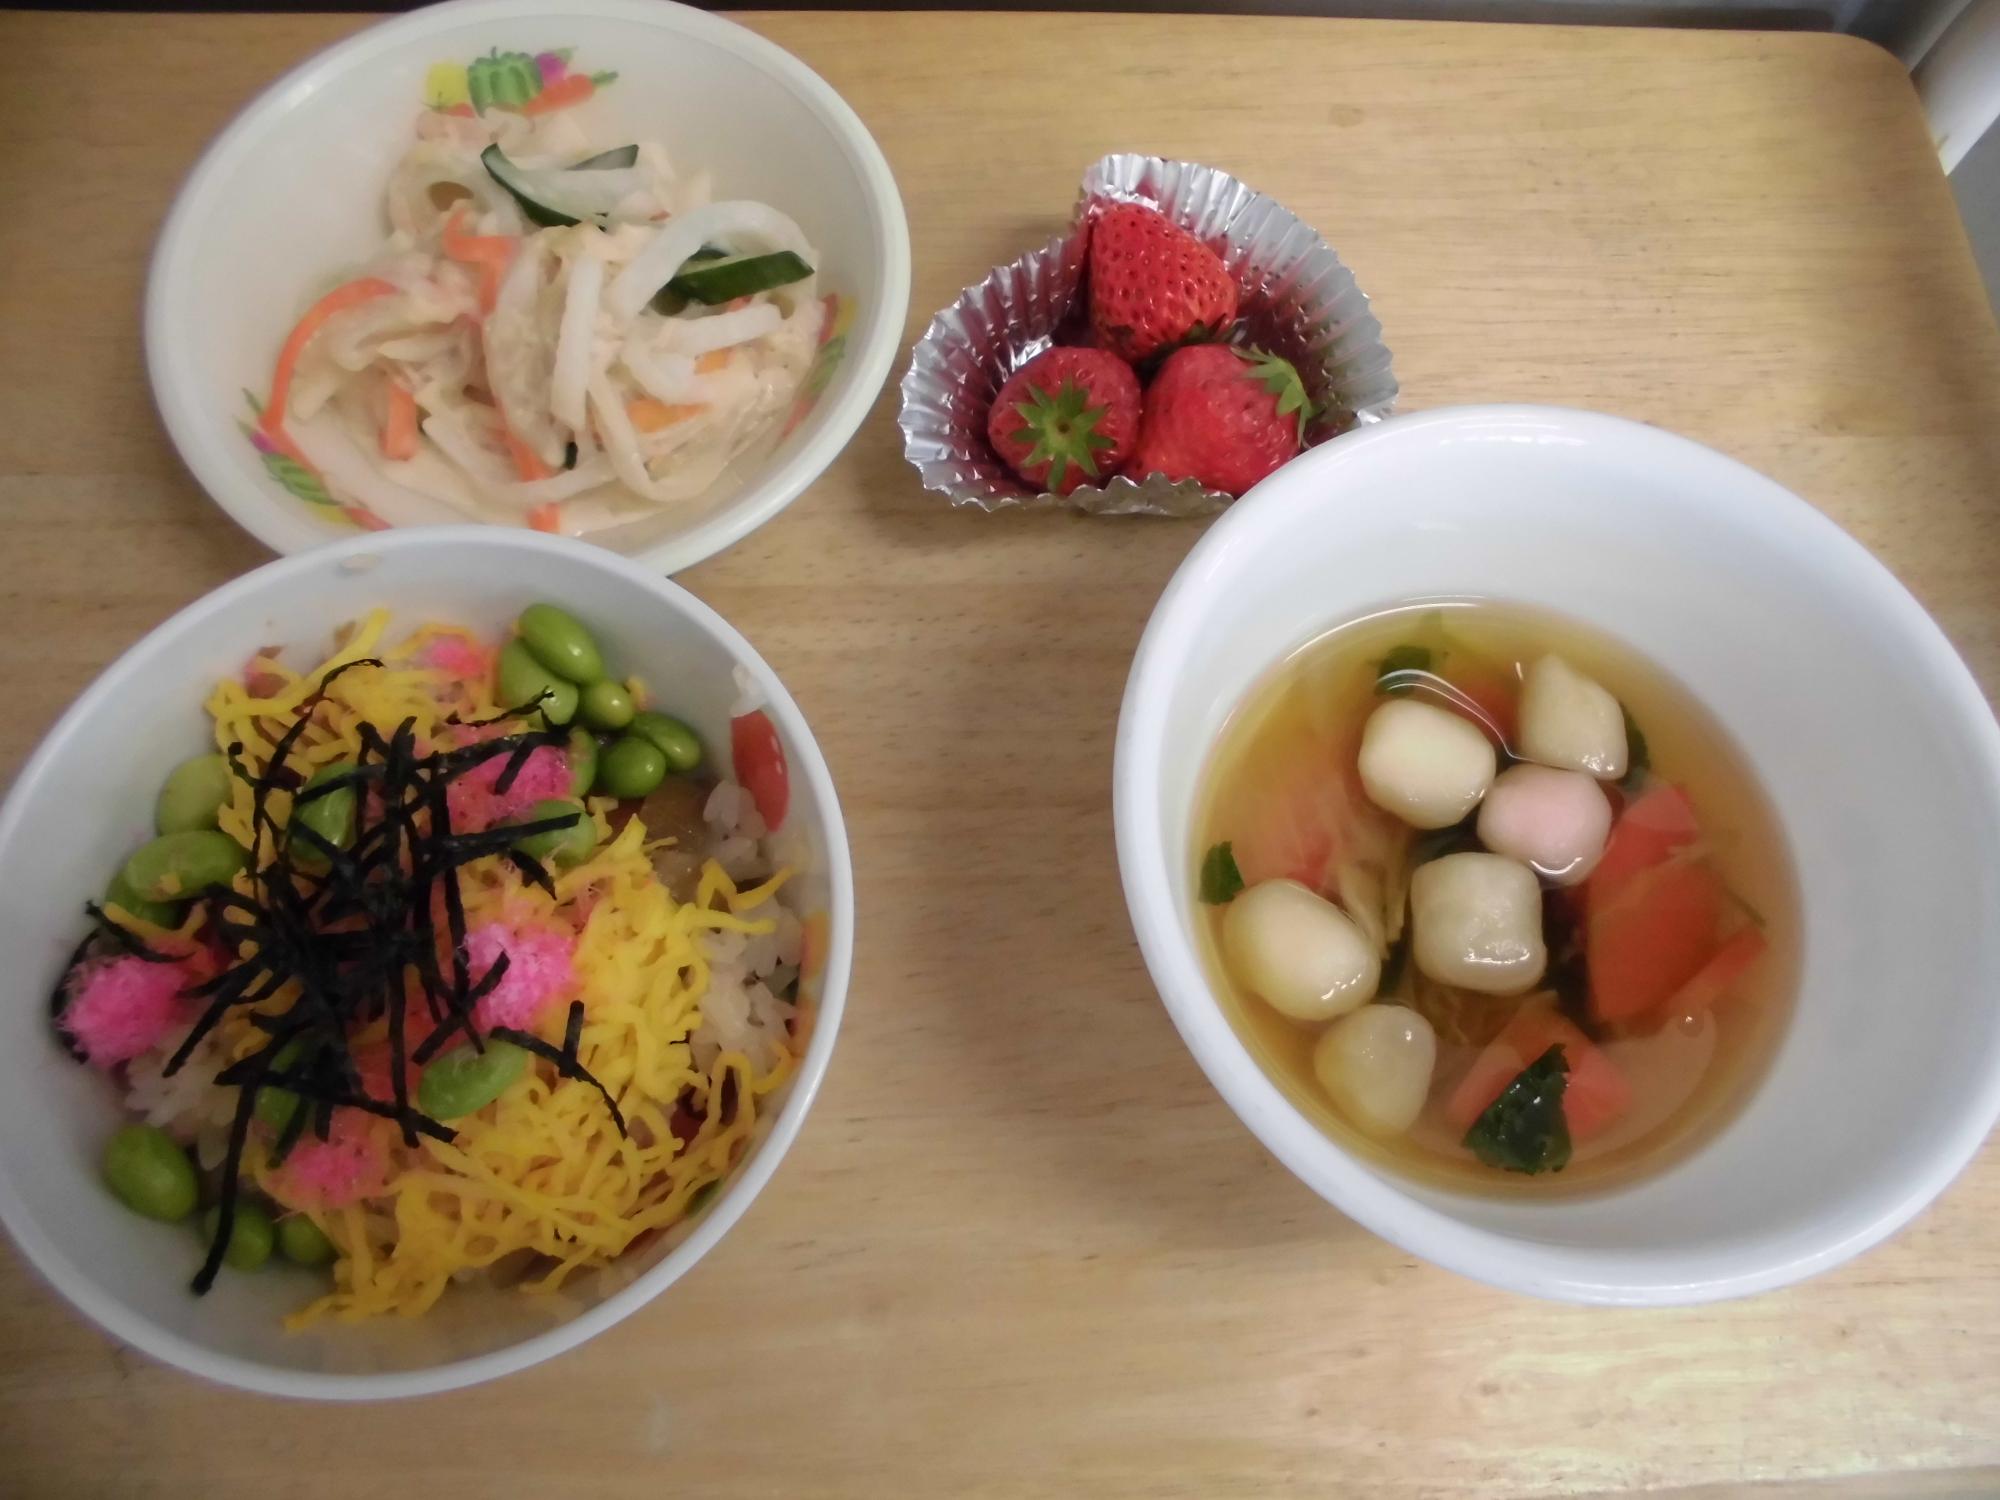 ちらし寿司、大根とにんじんのサラダ、すまし汁、イチゴの並んでいる給食の写真